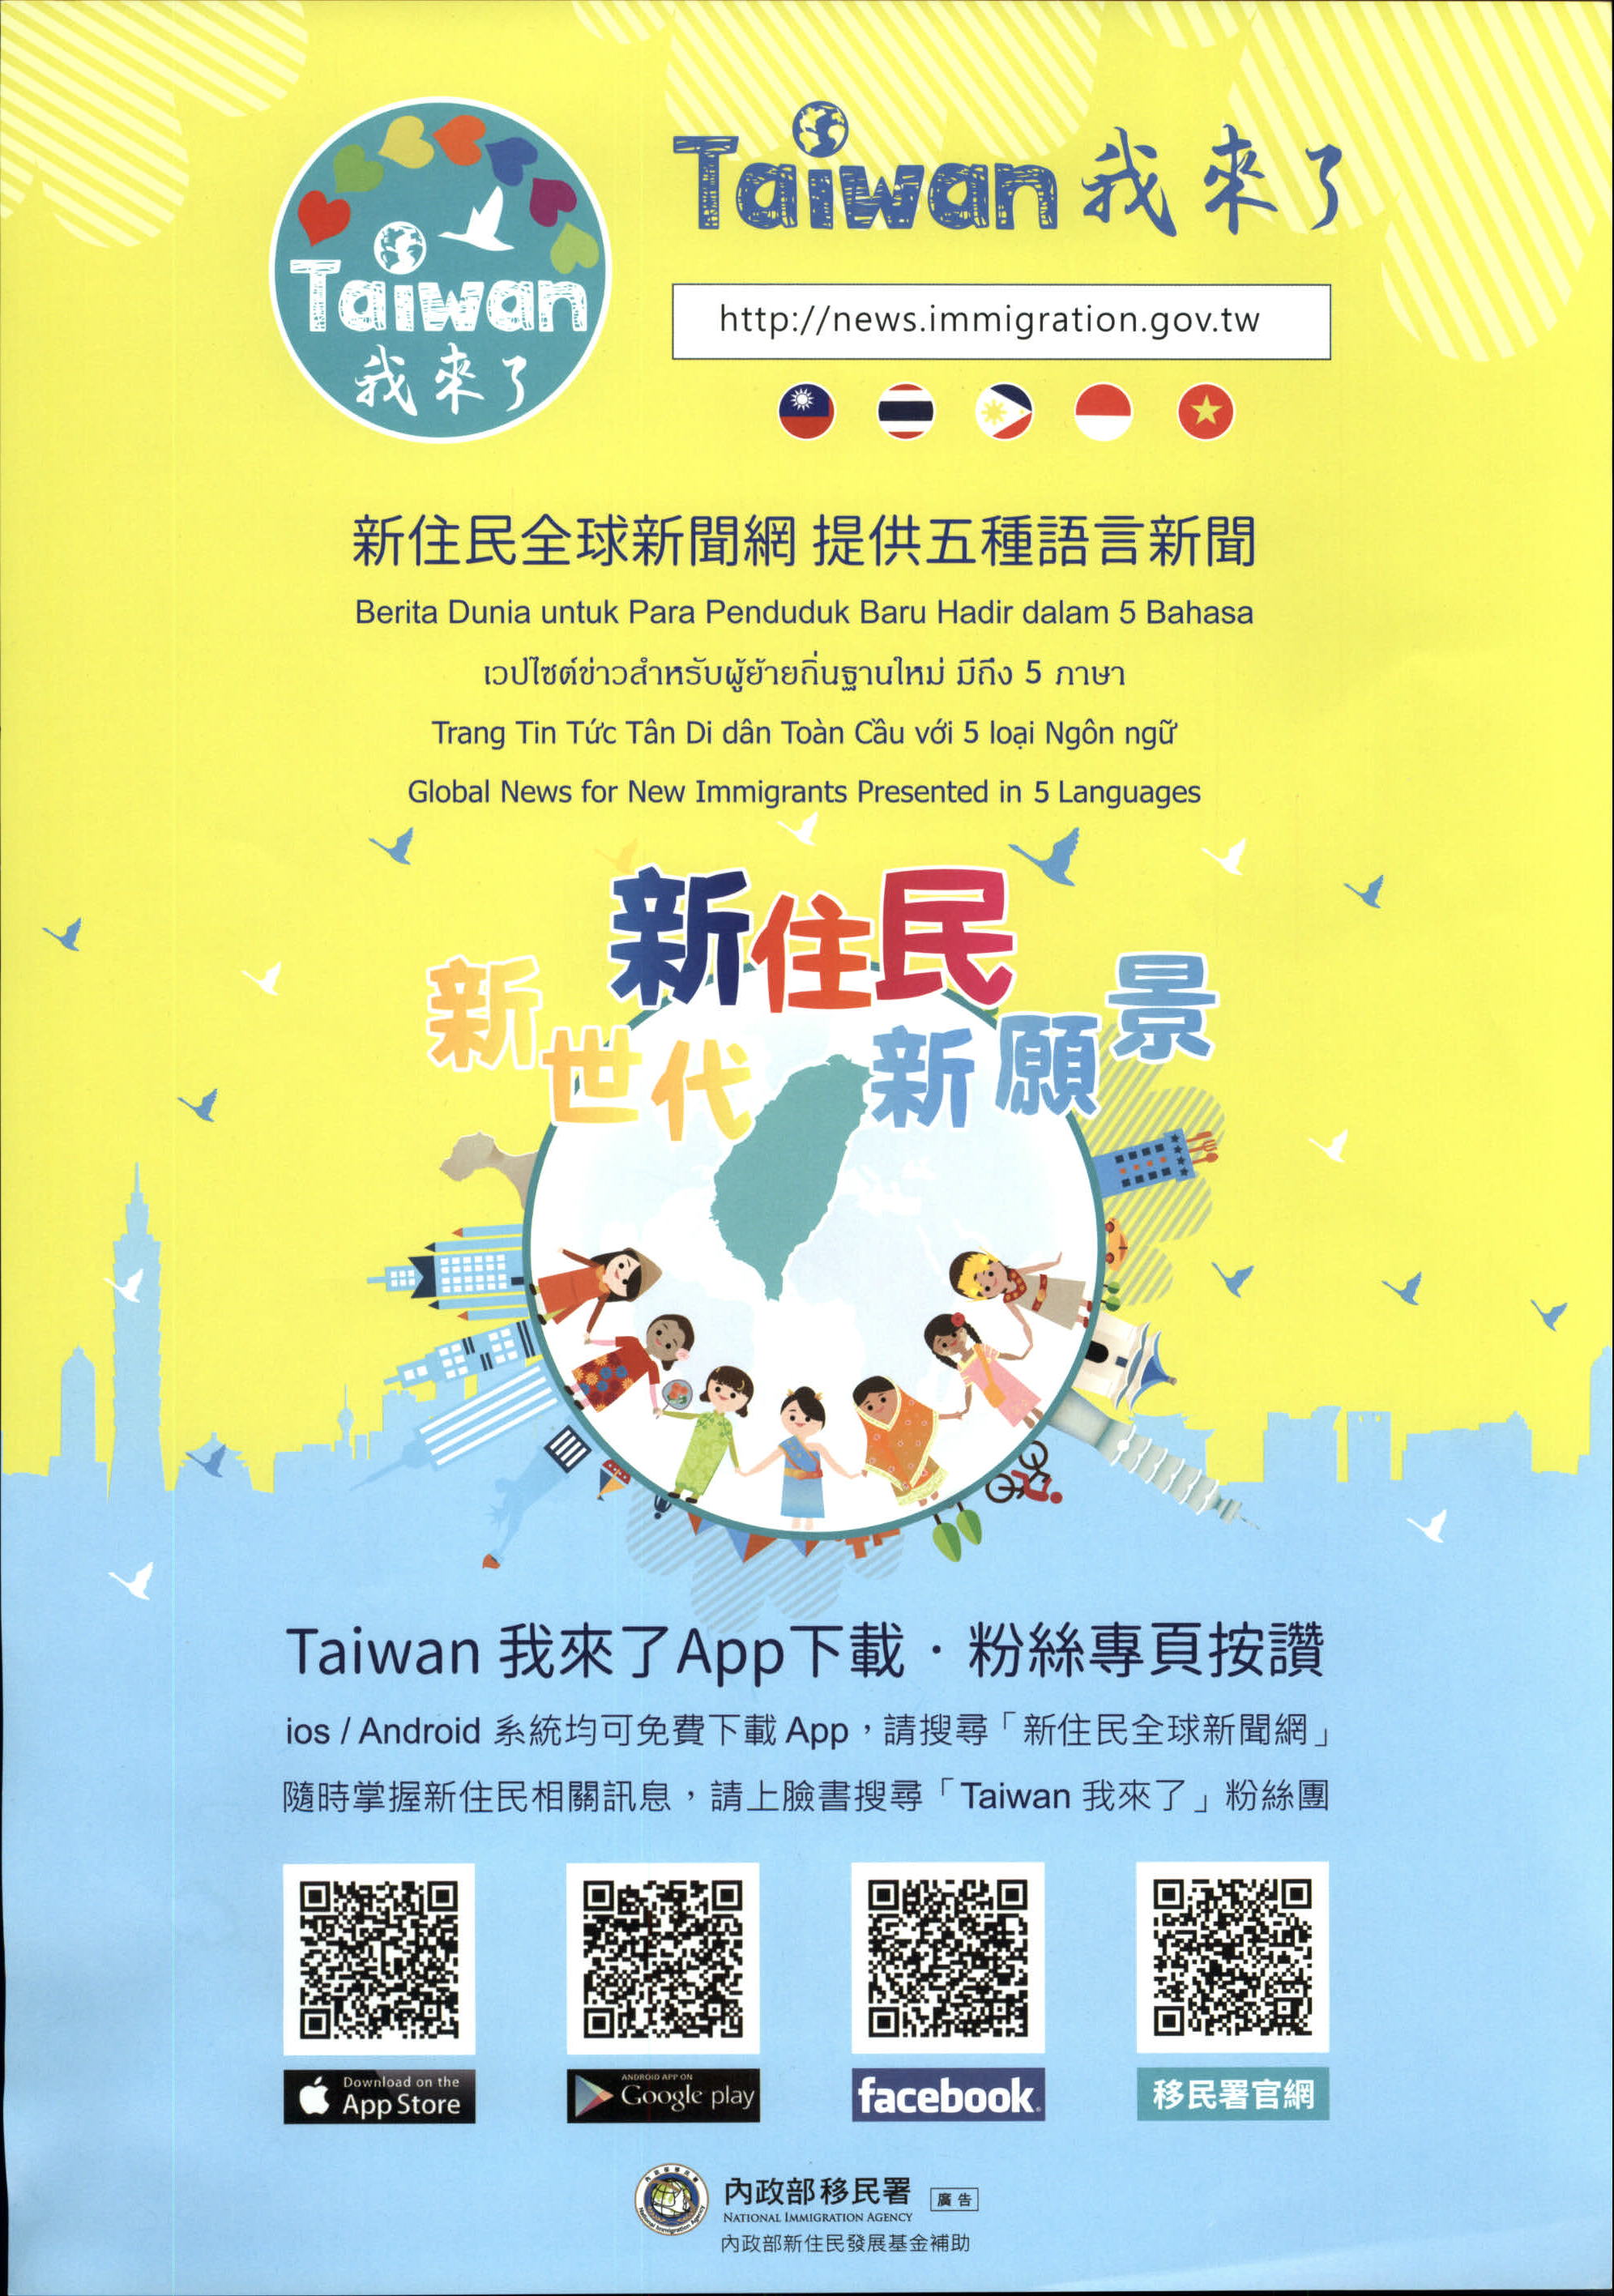 Taiwan我來了!新住民全球新聞網，提供5種語言新聞